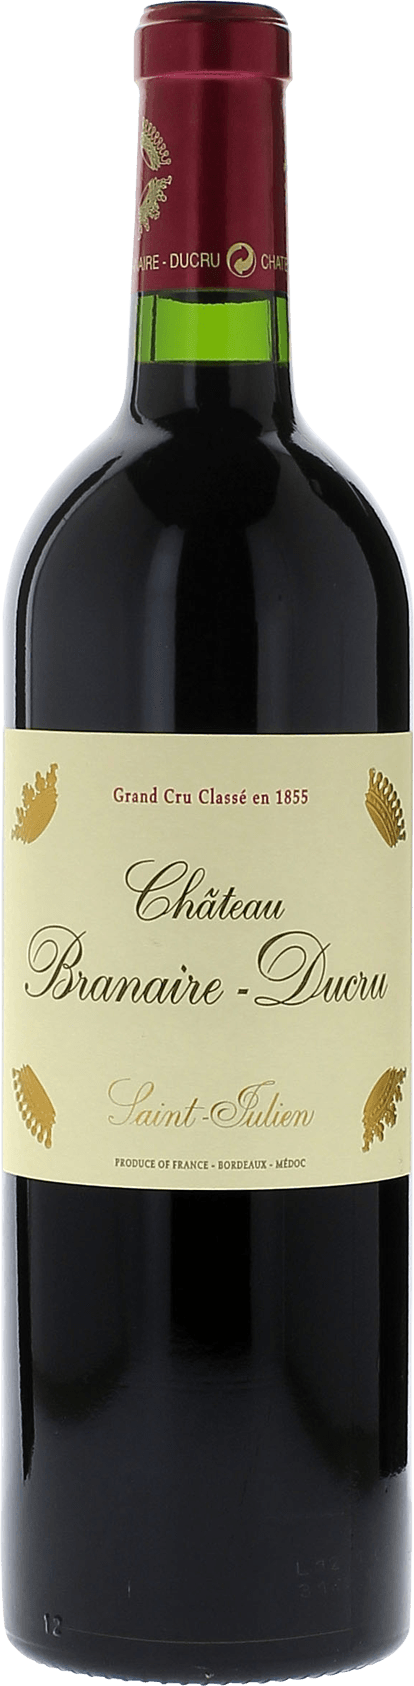 Branaire ducru 2017 4me Grand cru class Saint-Julien, Bordeaux rouge